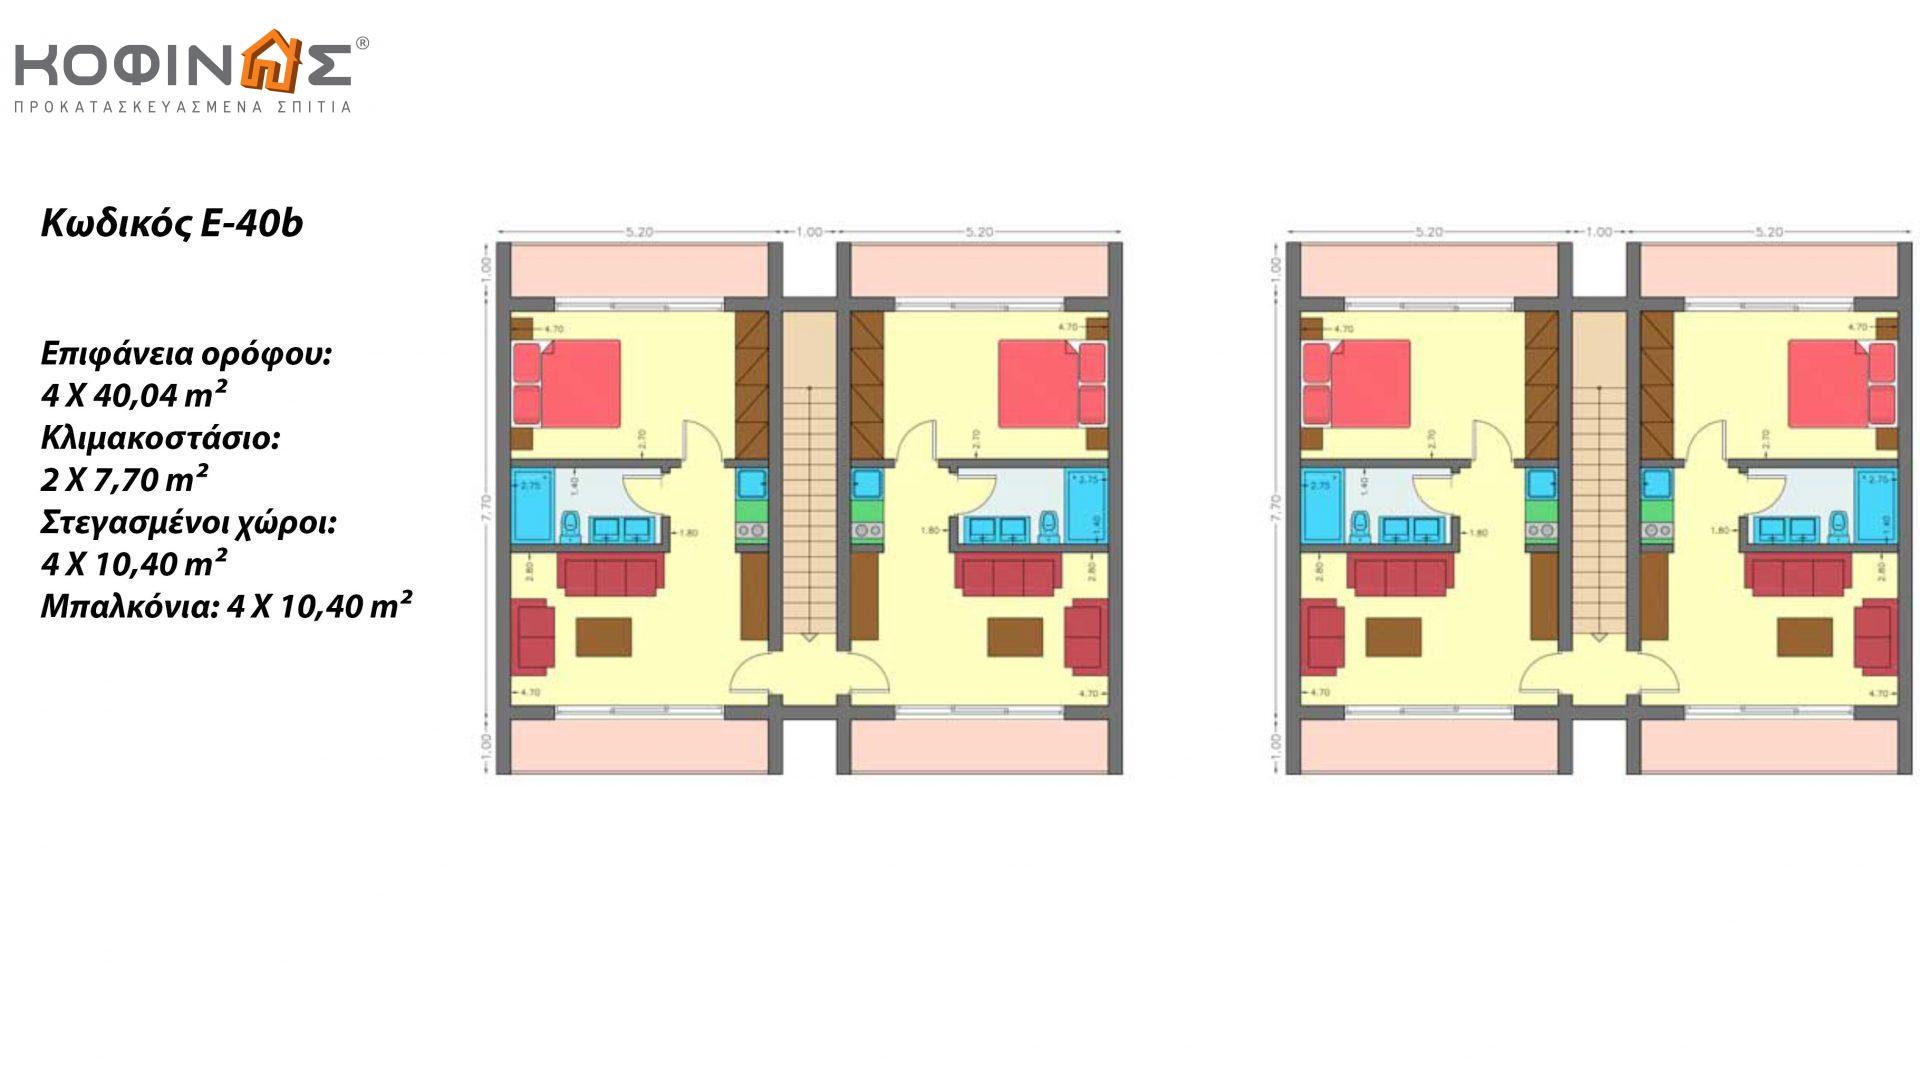 Συγκρότημα Κατοικιών E-40b, συνολικής επιφάνειας οικιών 8×40,04 & κλιμακοστασίων 4×7,70 = 351,12 τ.μ. , συνολική επιφάνεια στεγασμένων χώρων 83.20 τ.μ., μπαλκόνια 41,6 τμ